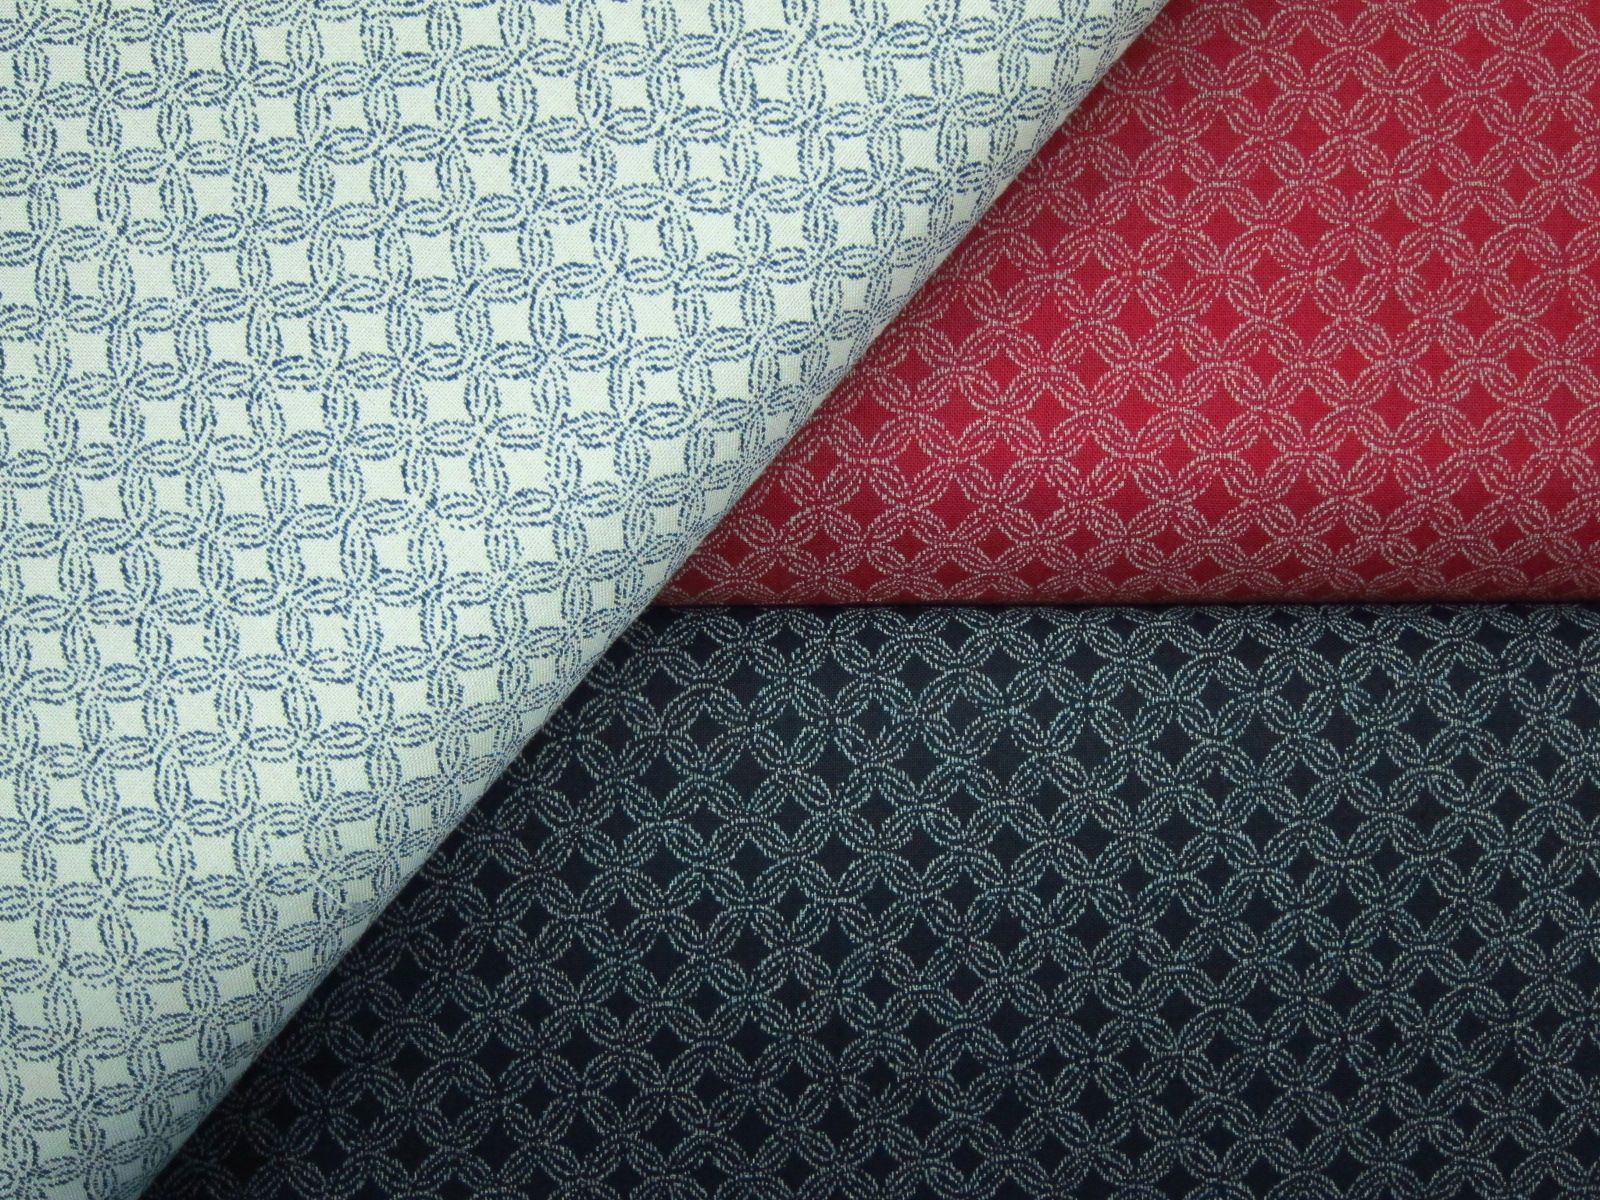 日本進口藍染風平織綿布-和風木窗格-米黃底、酒紅底、黑底-100%純綿、日本製造